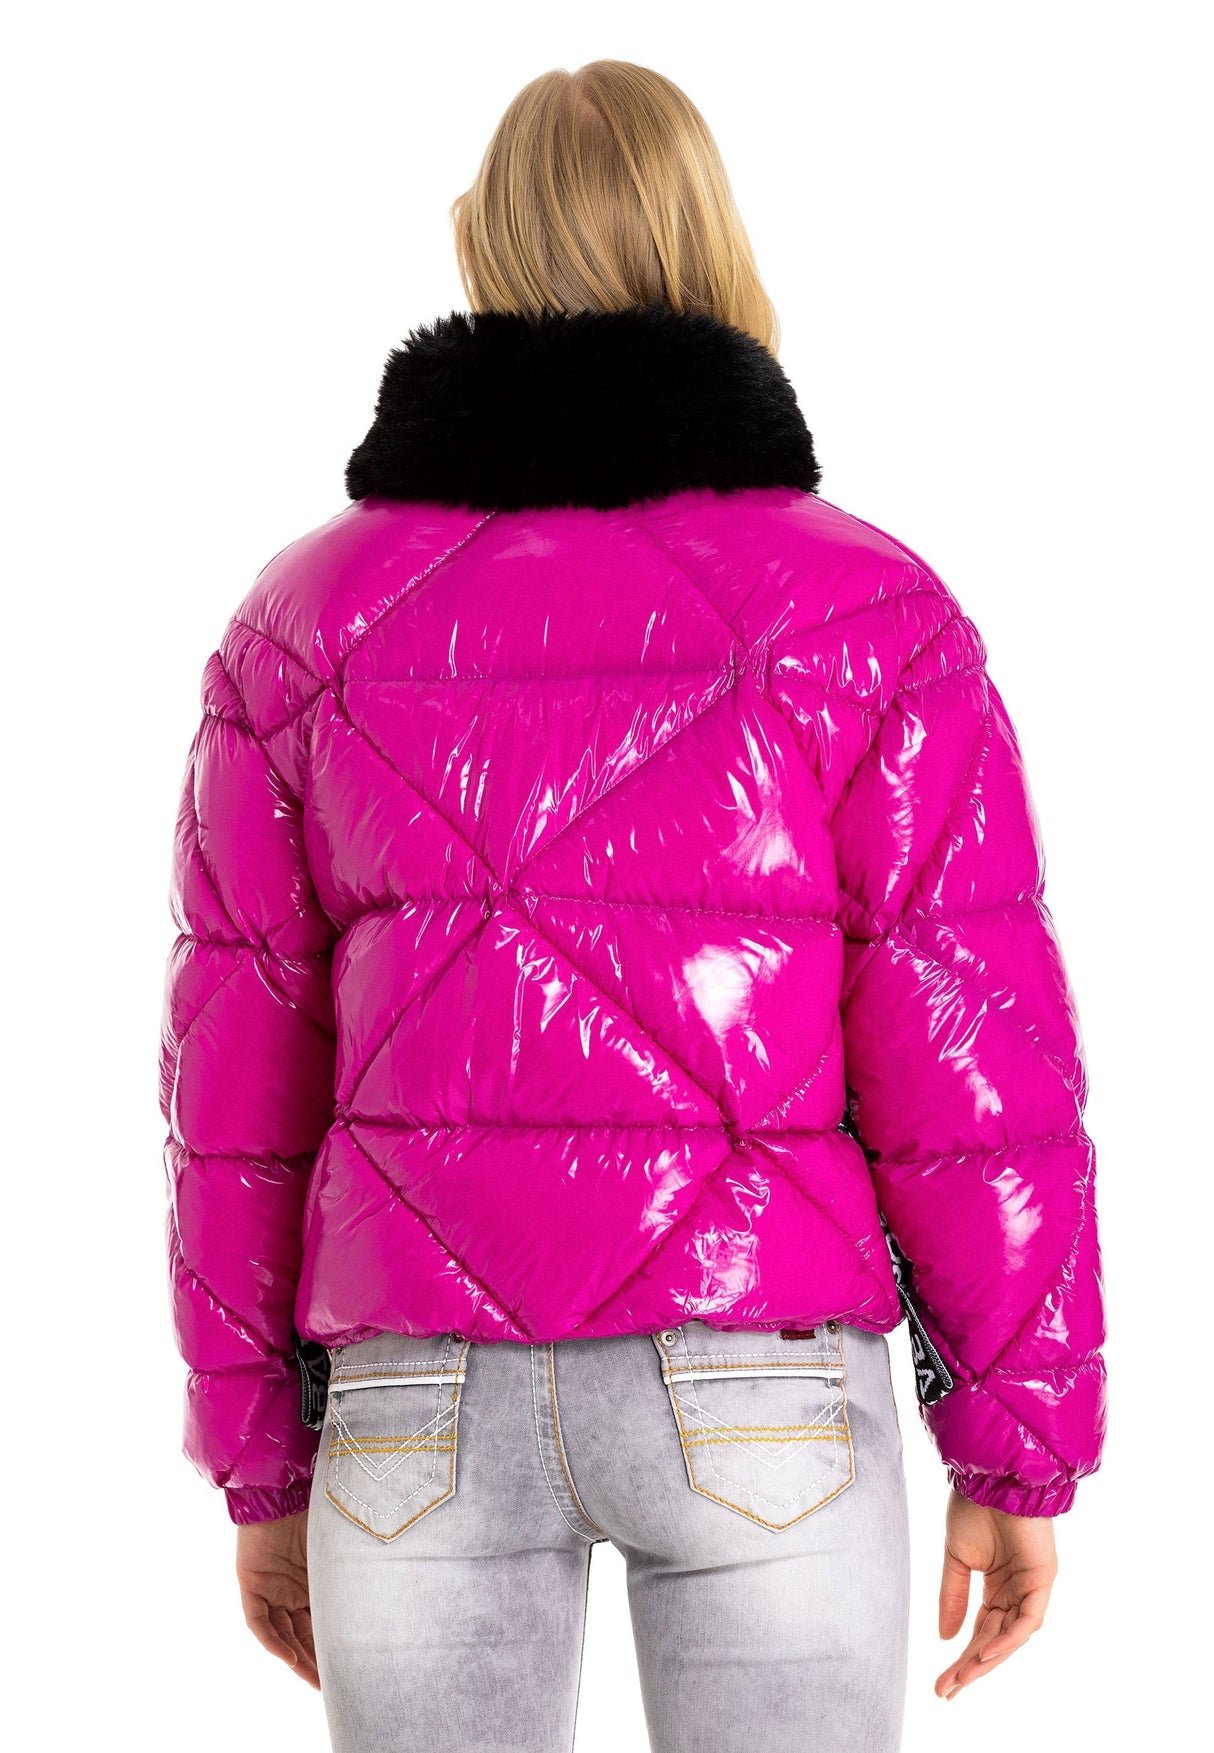 WM134 Winterjas voor dames met synthetische bontheksel